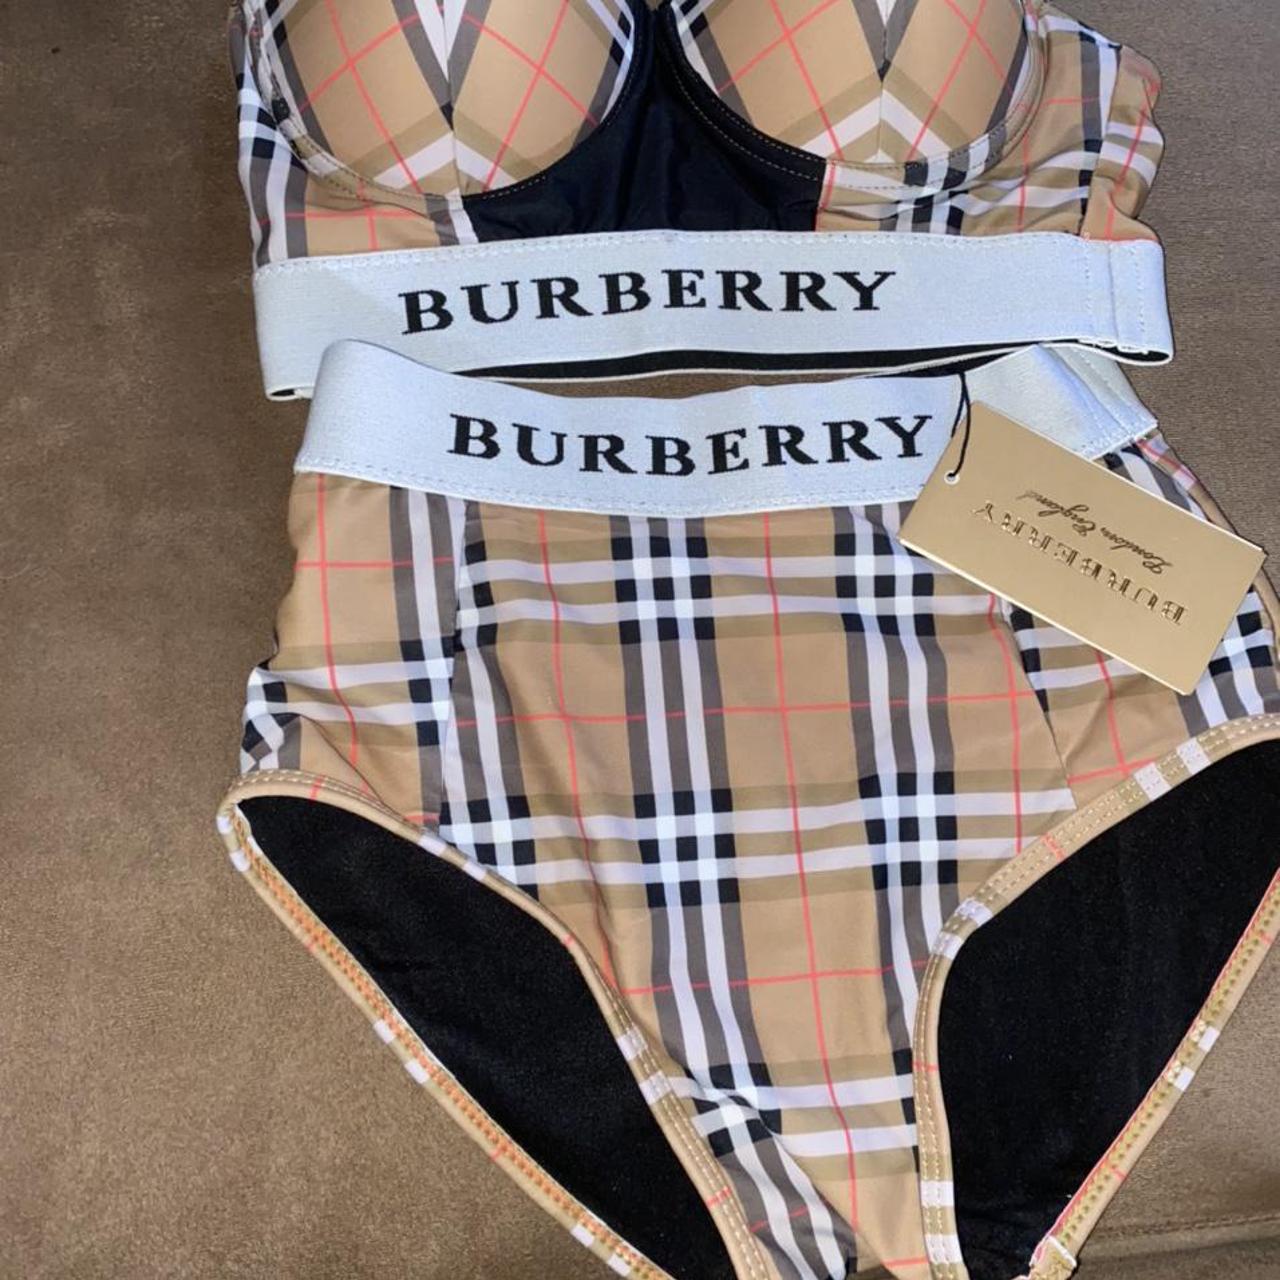 Burberry Women's Suit | Depop